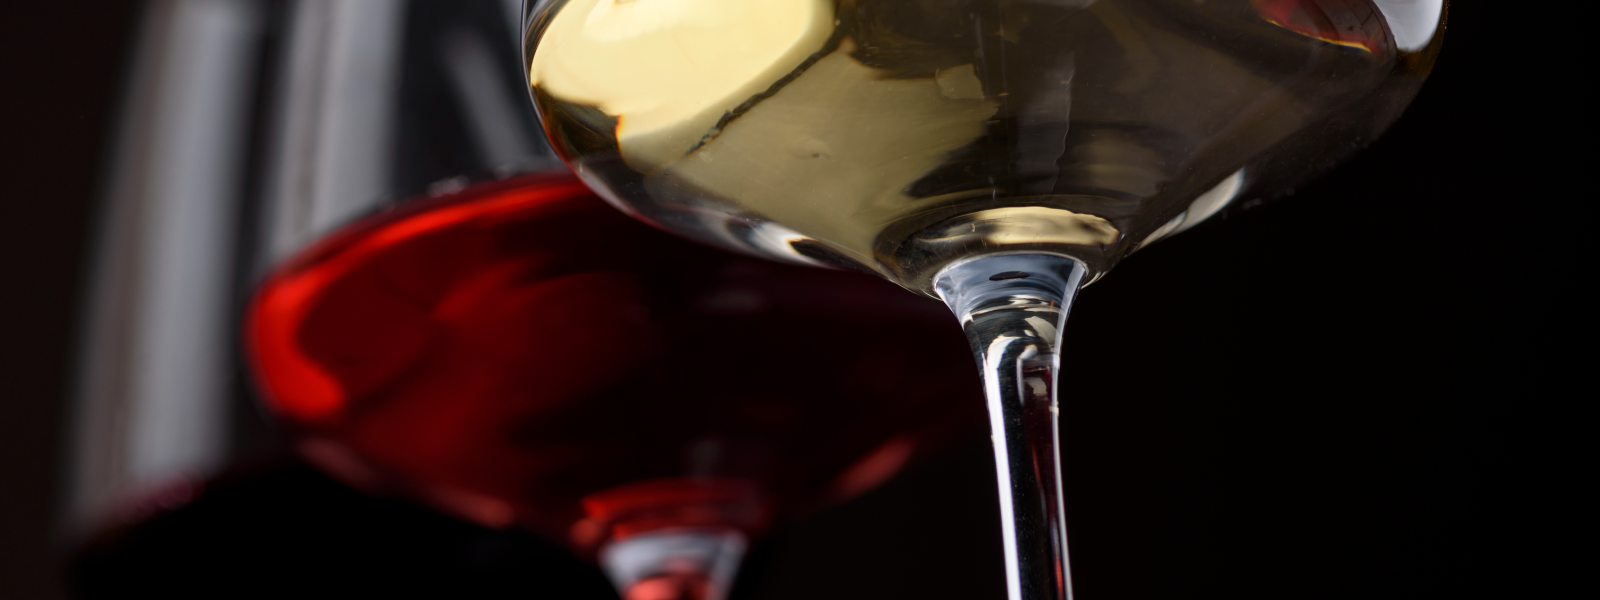 LE SOLEIL JA JÄÄ OÜ - Pakume suurepärast valikut prantsuse veine, vahuveine ja käsitööna valmistatud kinkepakke.